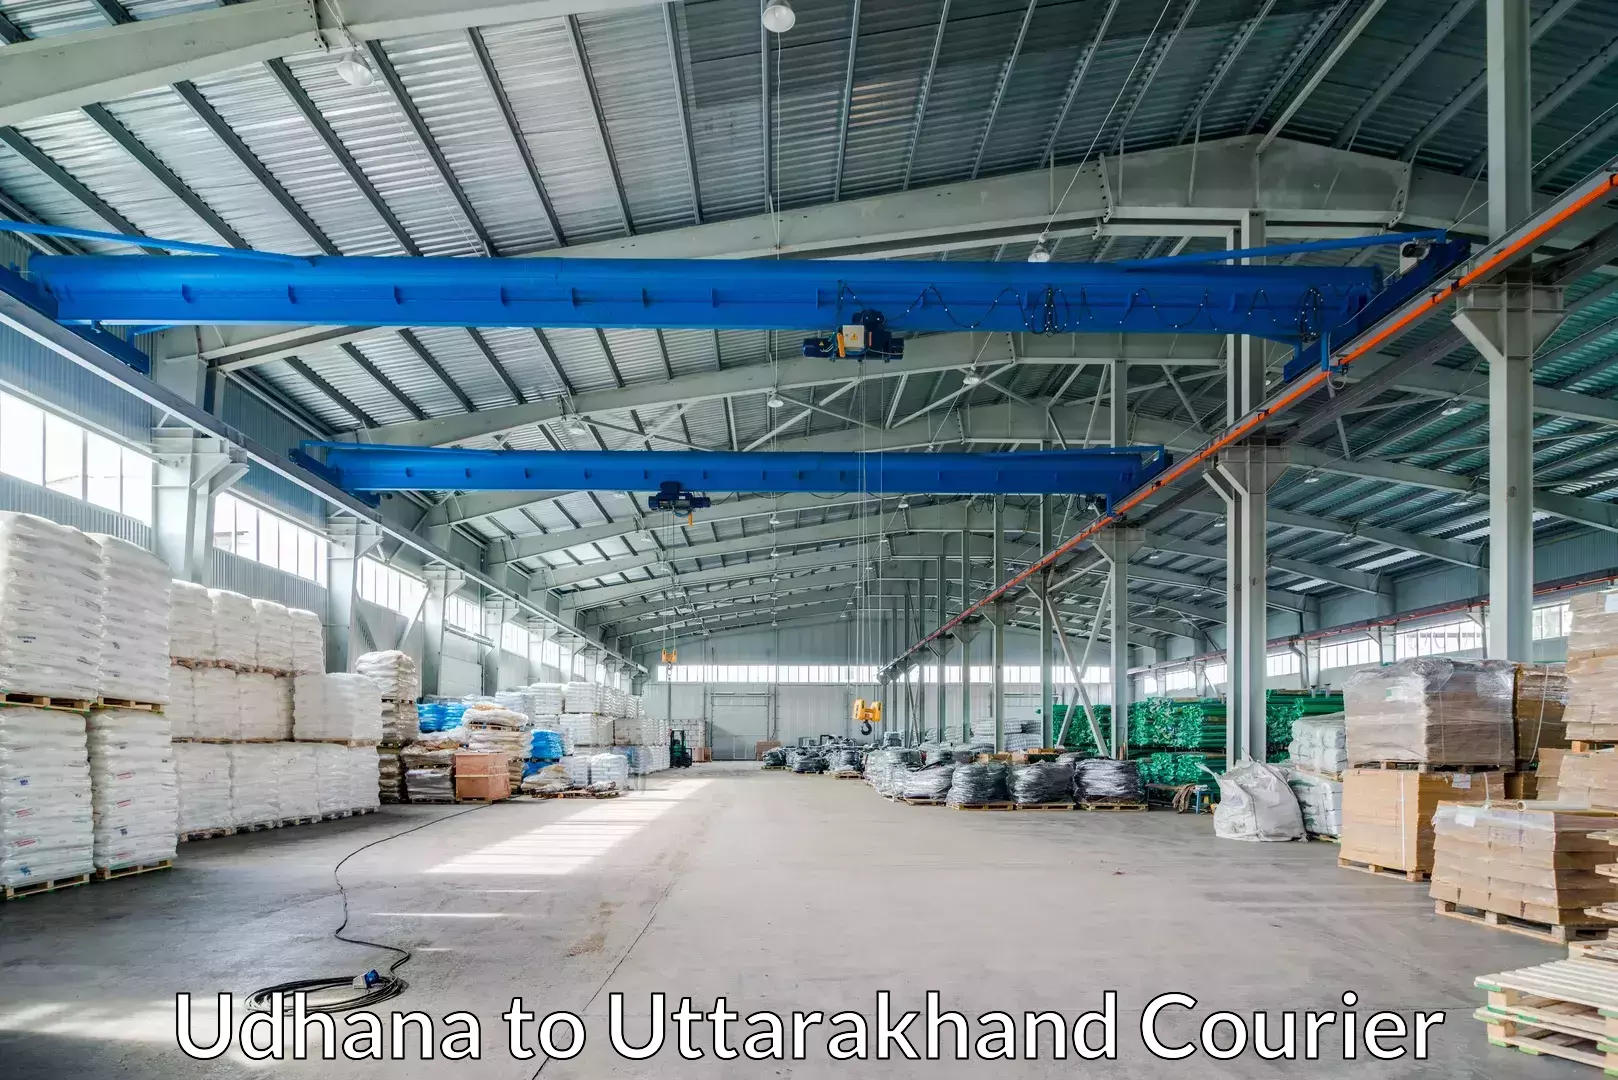 Luggage shipment tracking Udhana to Uttarakhand